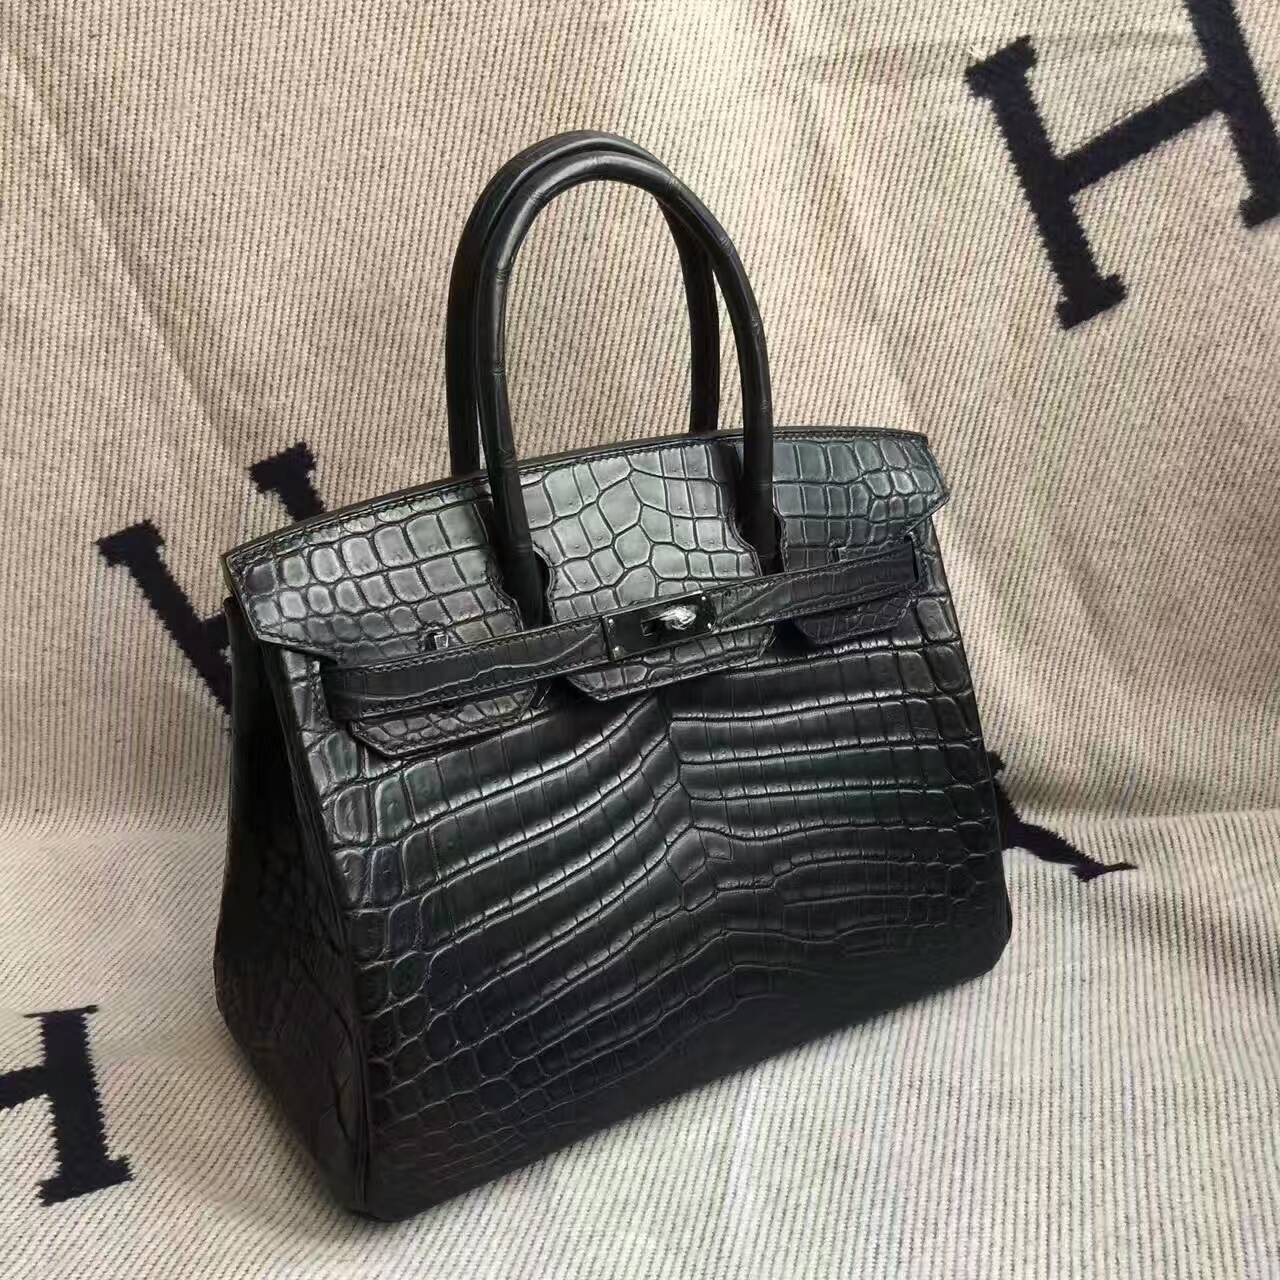 Sale Hermes Crocodile Matt Leather Birkin30cm Handbag in CK89 Black ...